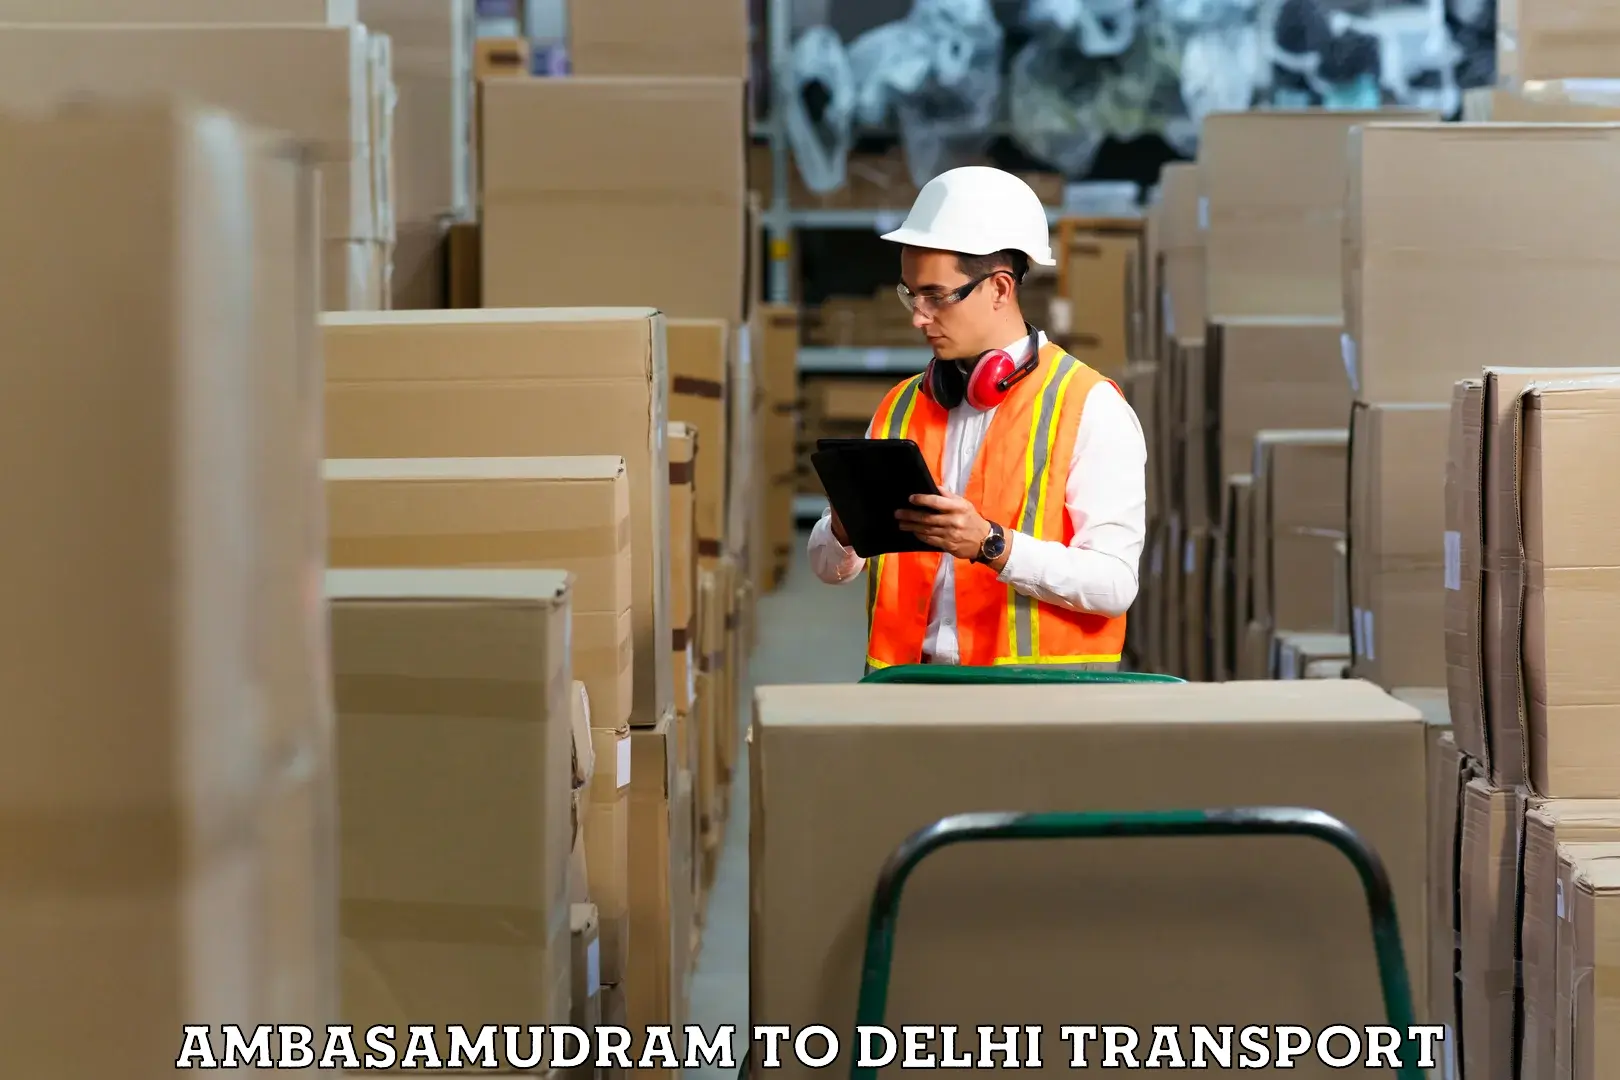 Commercial transport service Ambasamudram to Guru Gobind Singh Indraprastha University New Delhi